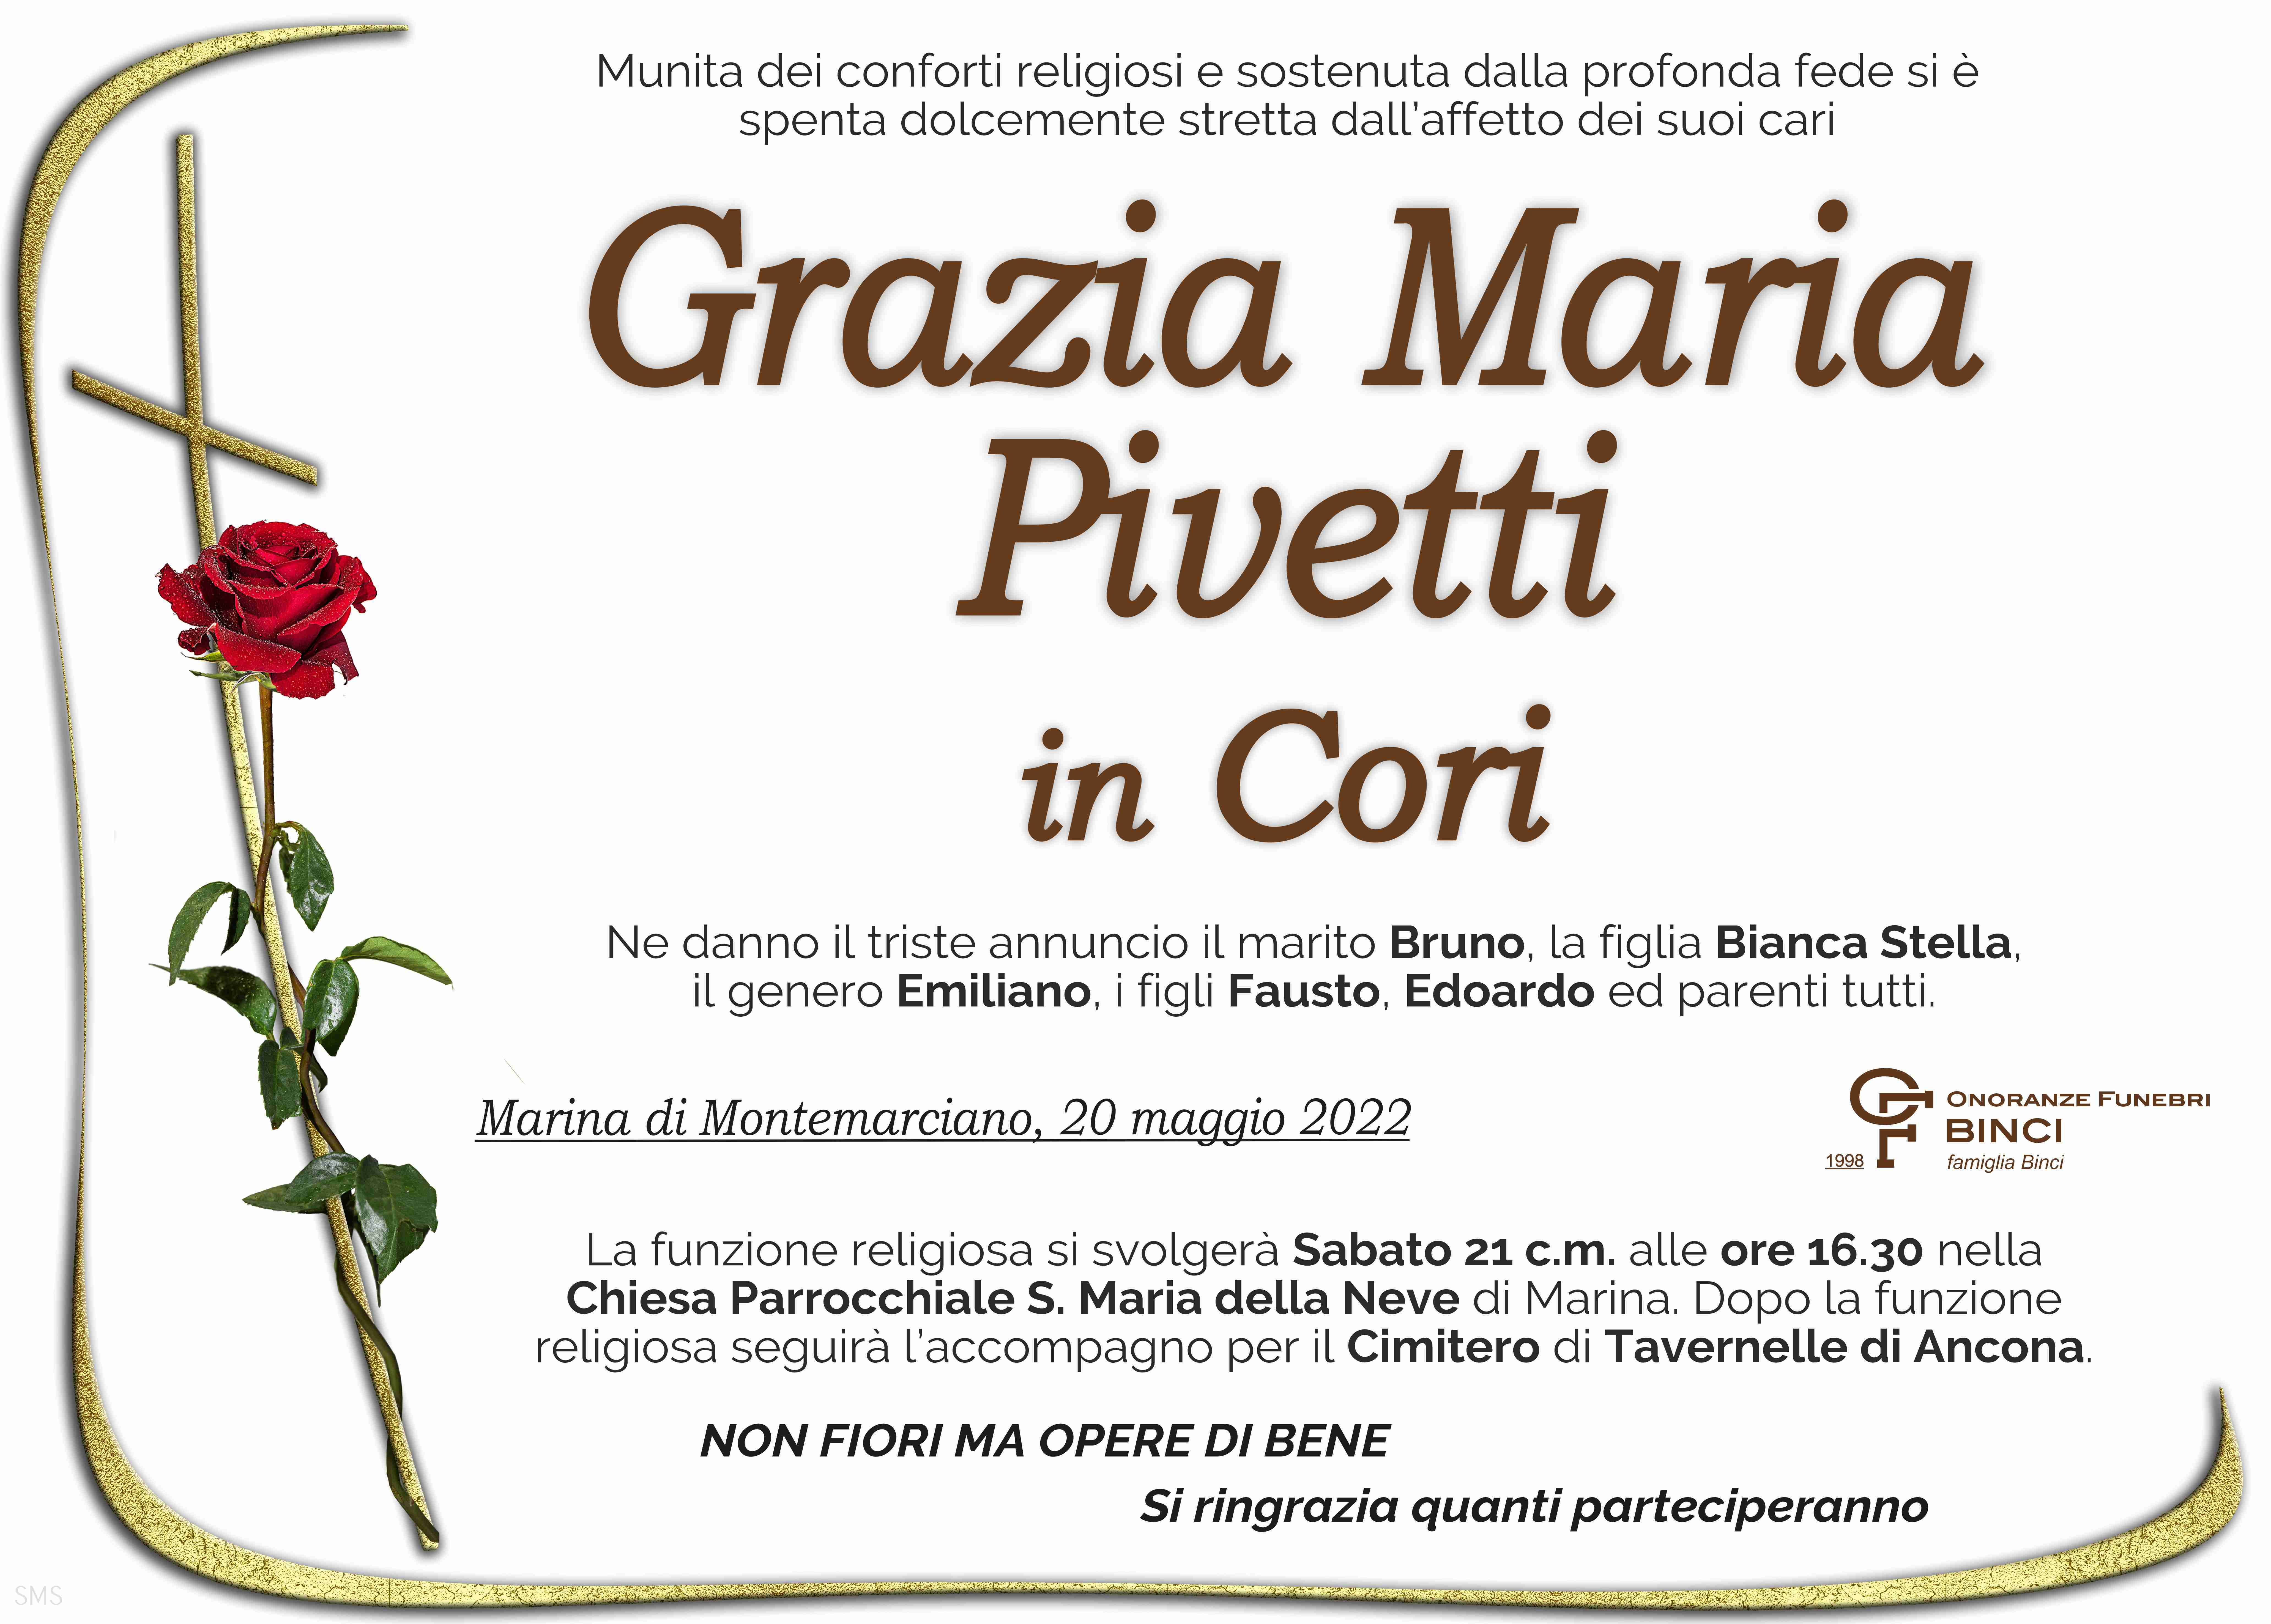 Grazia Maria Pivetti